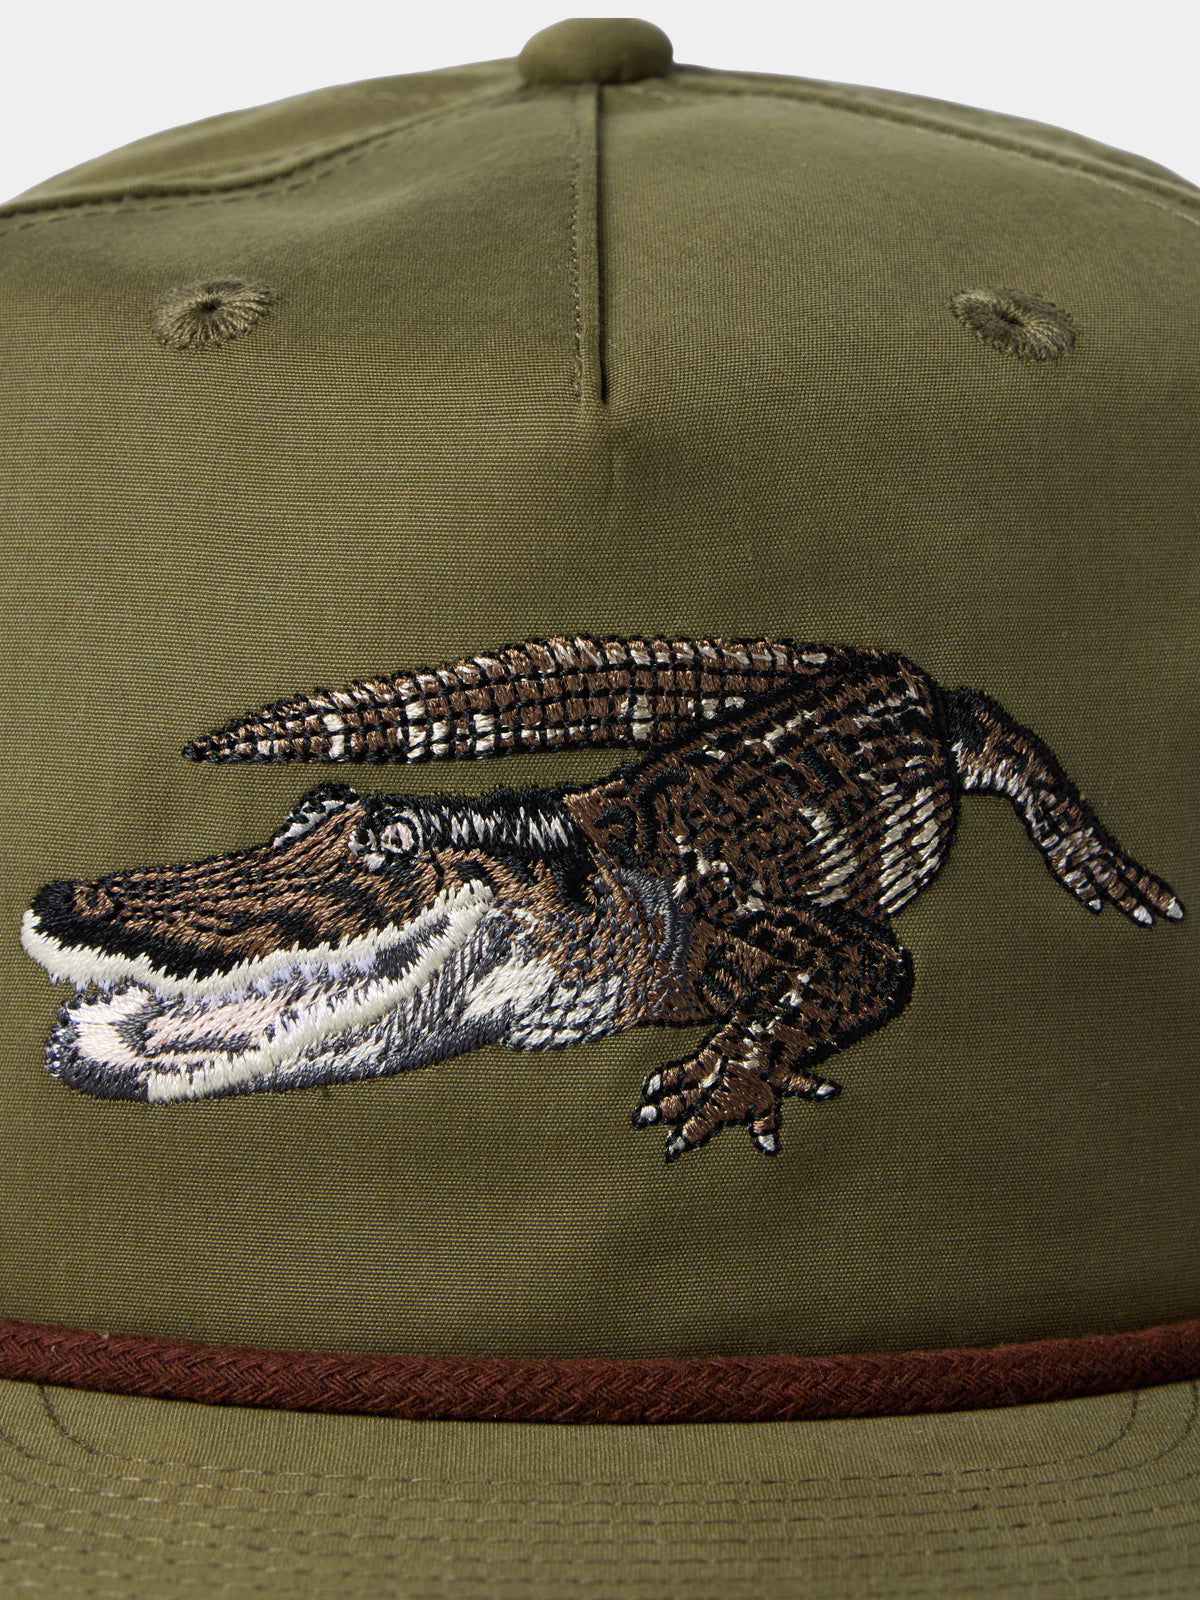 Duck Camp Gator Hat